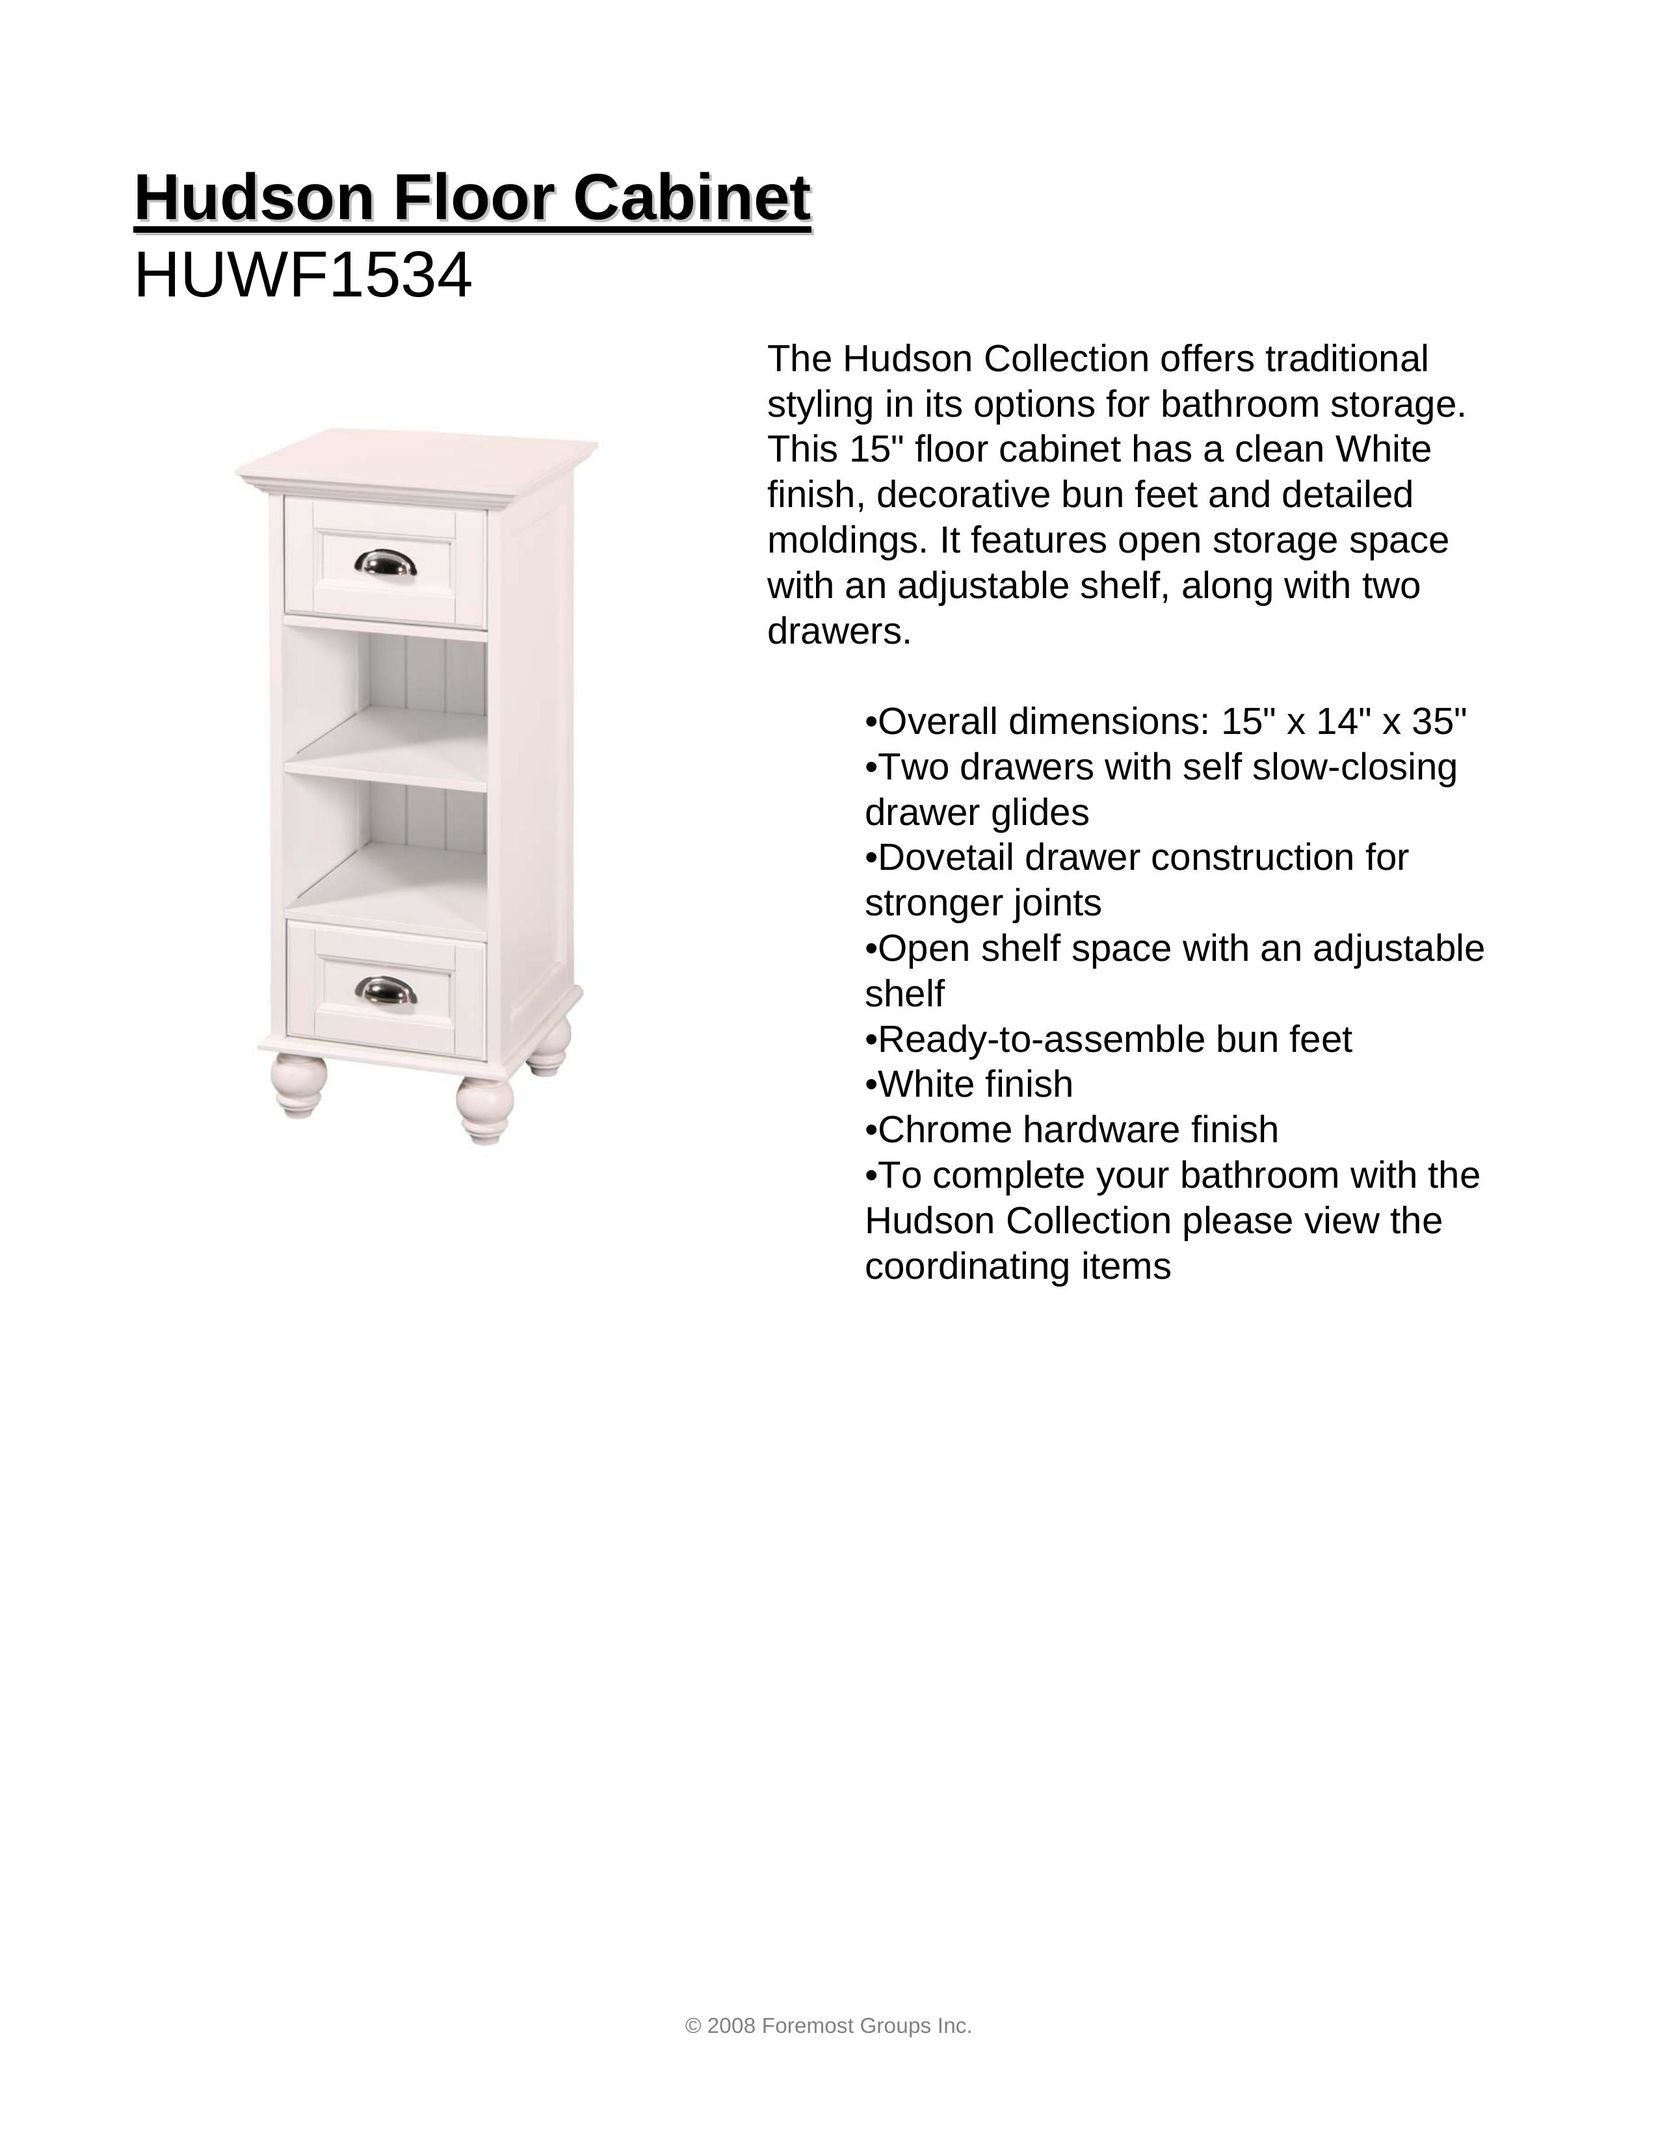 Hudson Sales & Engineering HUWF1534 Indoor Furnishings User Manual